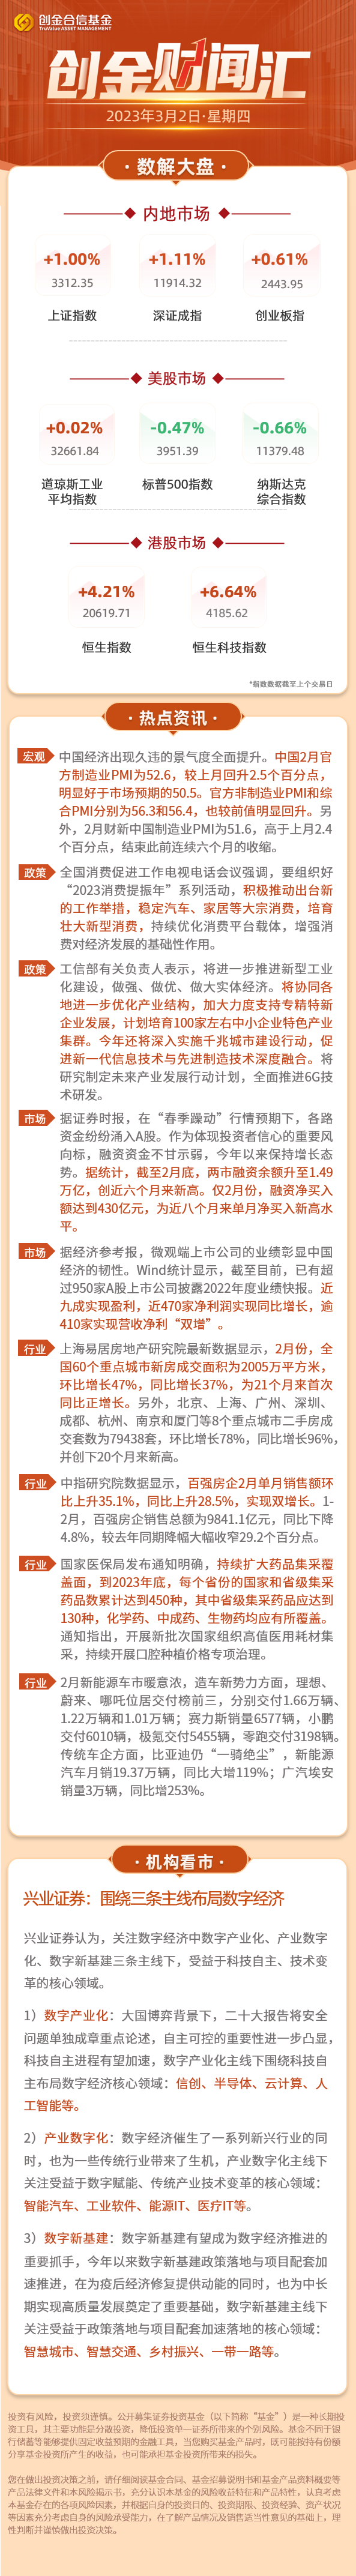 【今日晨讯】中国经济出现久违的景气度全面提升